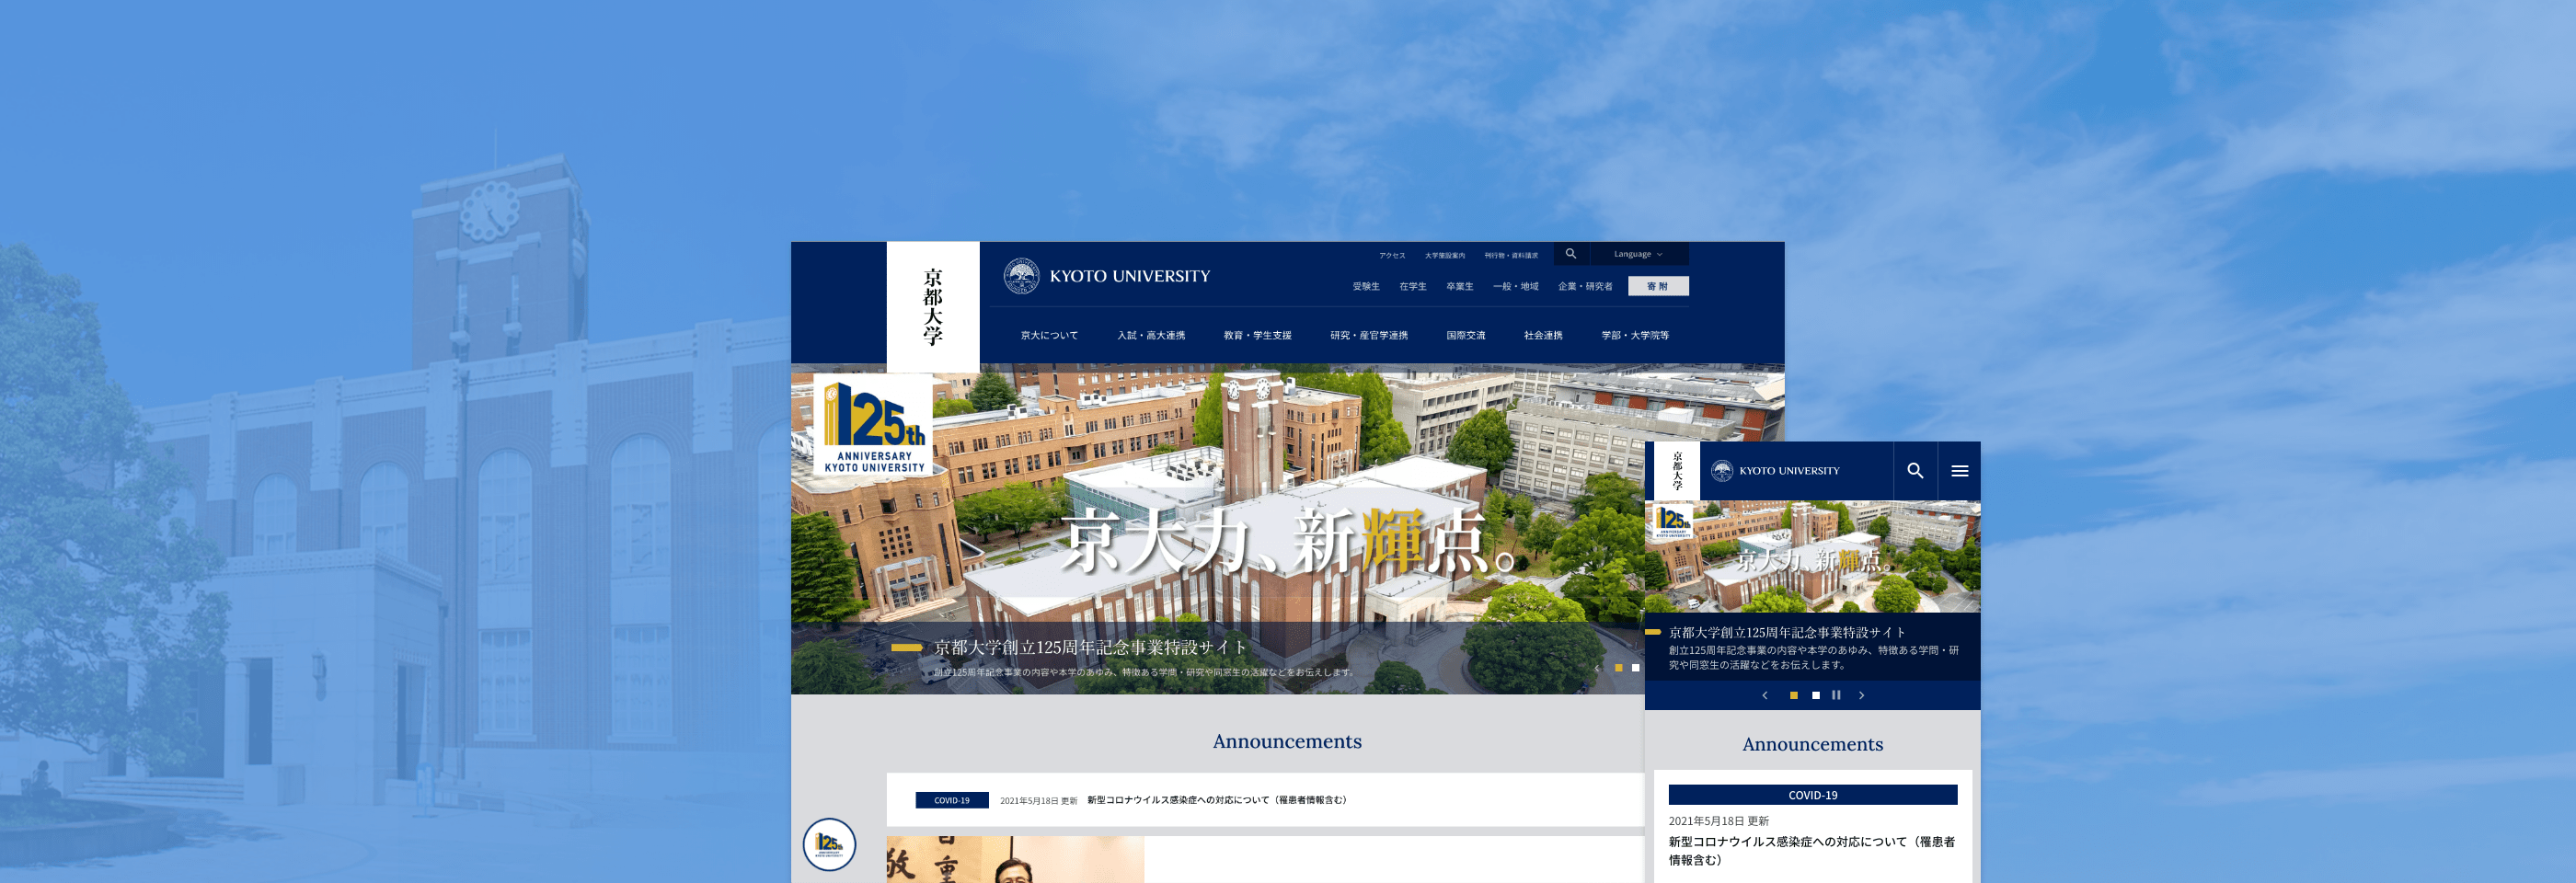 京都大学 公式ウェブサイト イメージ画像